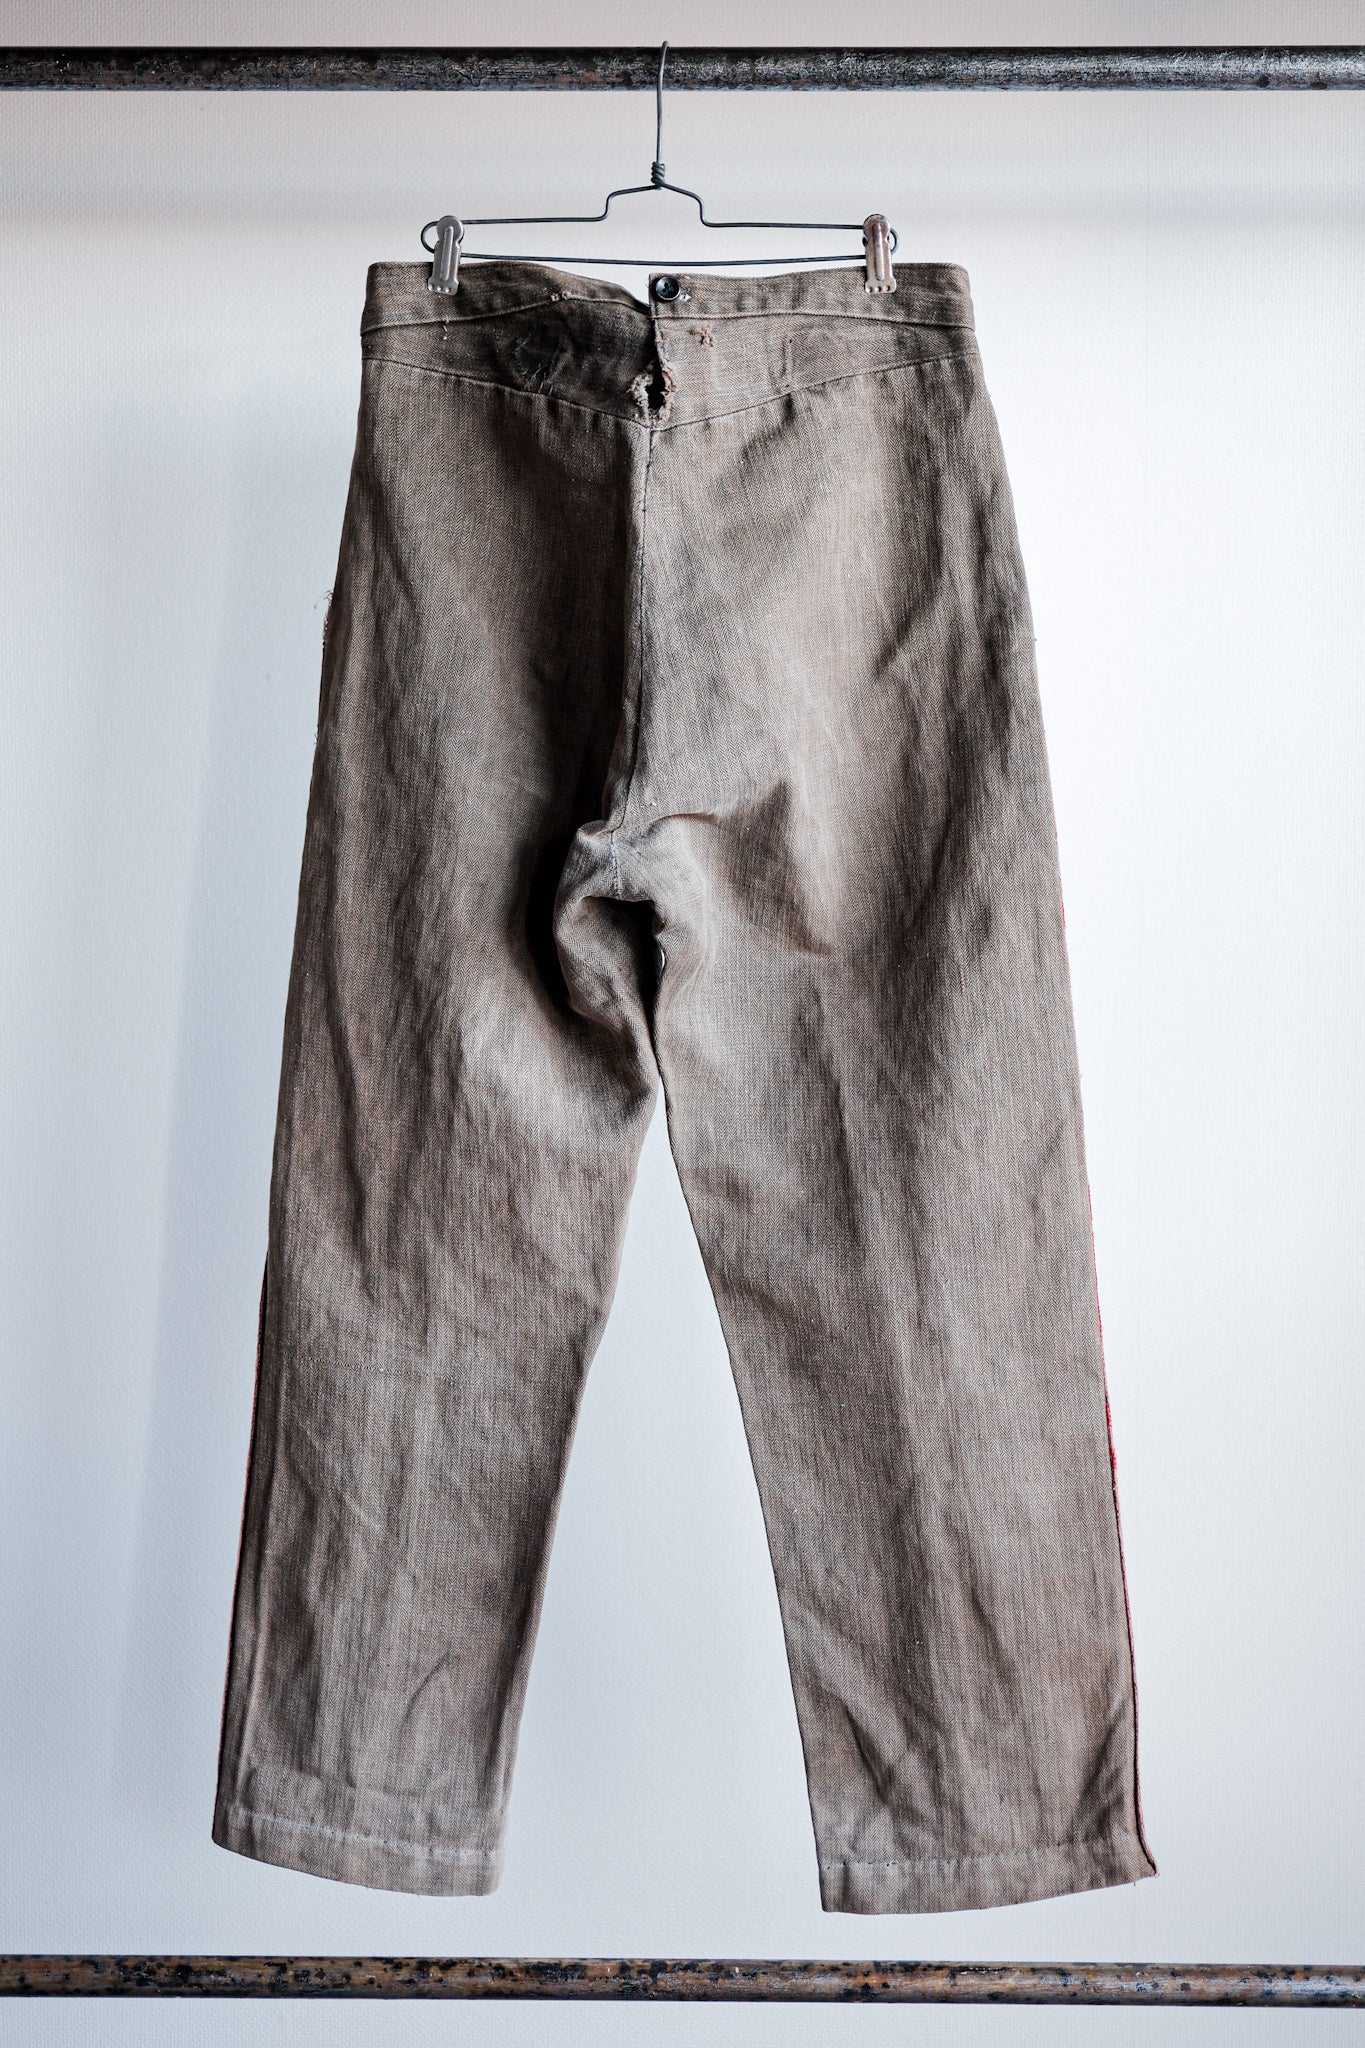 [ปลายปีที่ 19 C] กางเกงนักดับเพลิงผ้าปูที่นอนสีน้ำตาล HBT โบราณของฝรั่งเศส